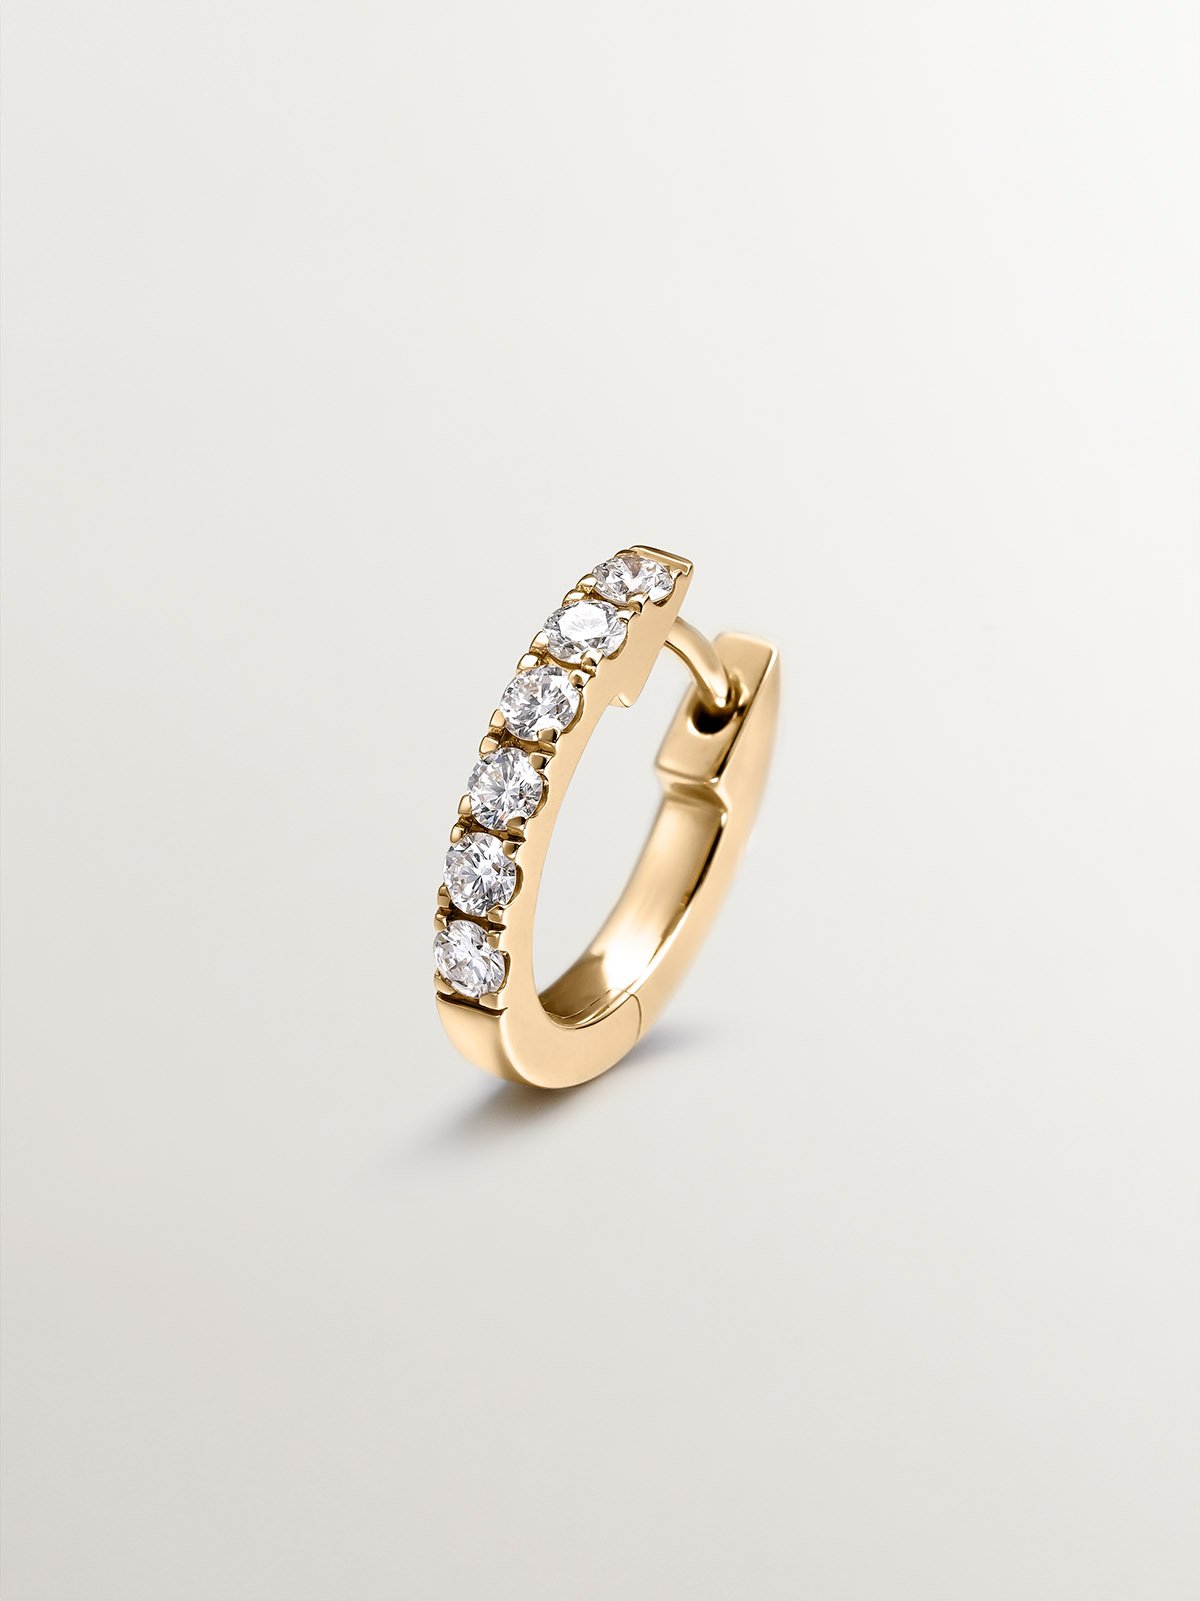 Boucle d'oreille individuelle, anneaux en or jaune 18K avec des diamants.